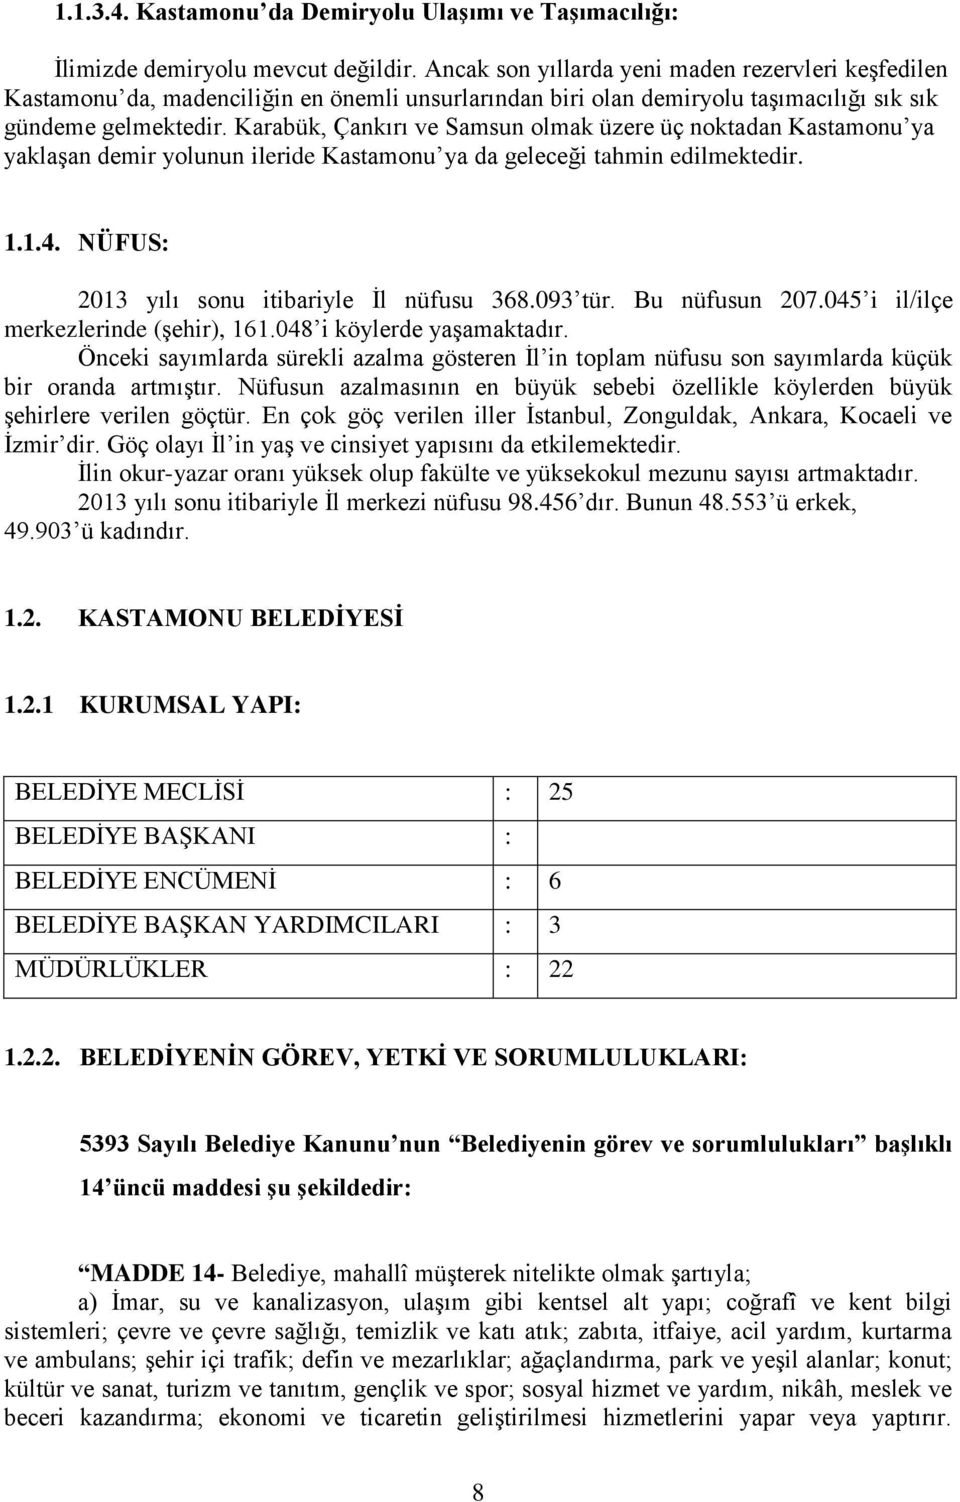 Karabük, Çankırı ve Samsun olmak üzere üç noktadan Kastamonu ya yaklaşan demir yolunun ileride Kastamonu ya da geleceği tahmin edilmektedir. 1.1.4. NÜFUS: 2013 yılı sonu itibariyle İl nüfusu 368.